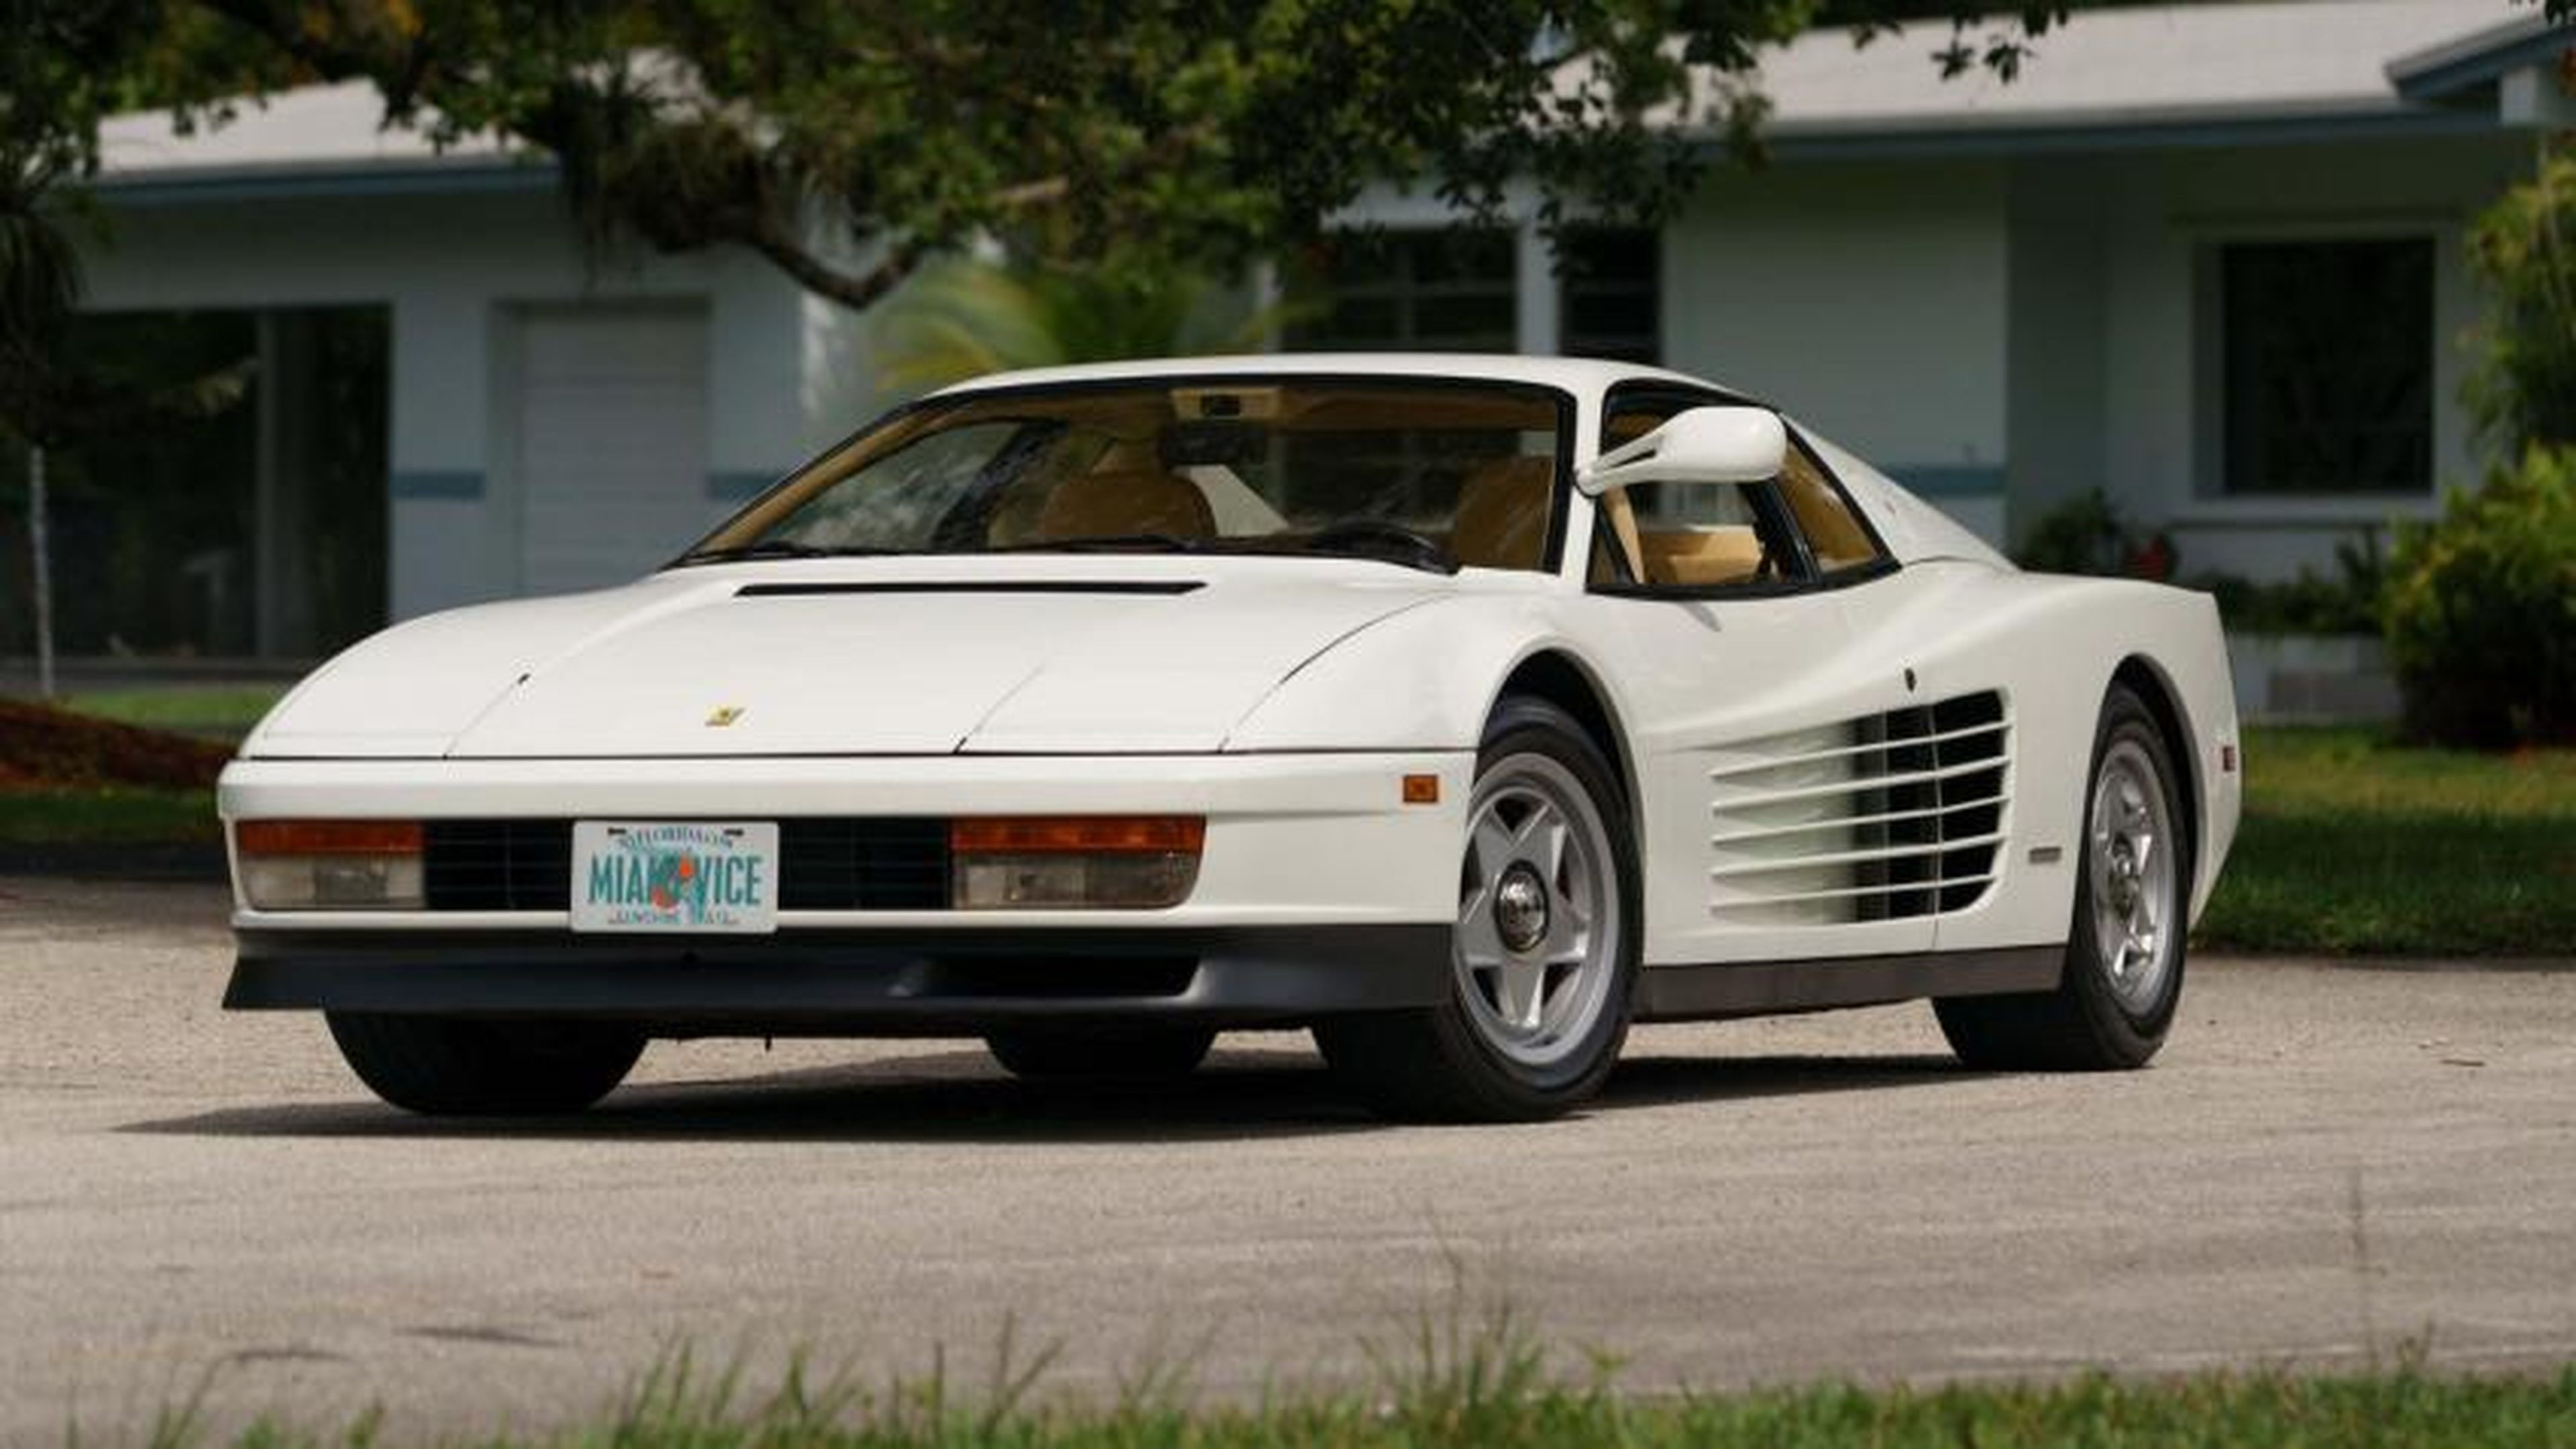 Ferrari Testarossa de 'Miami Vice' (Corrupción en Miami) con Monospecchio